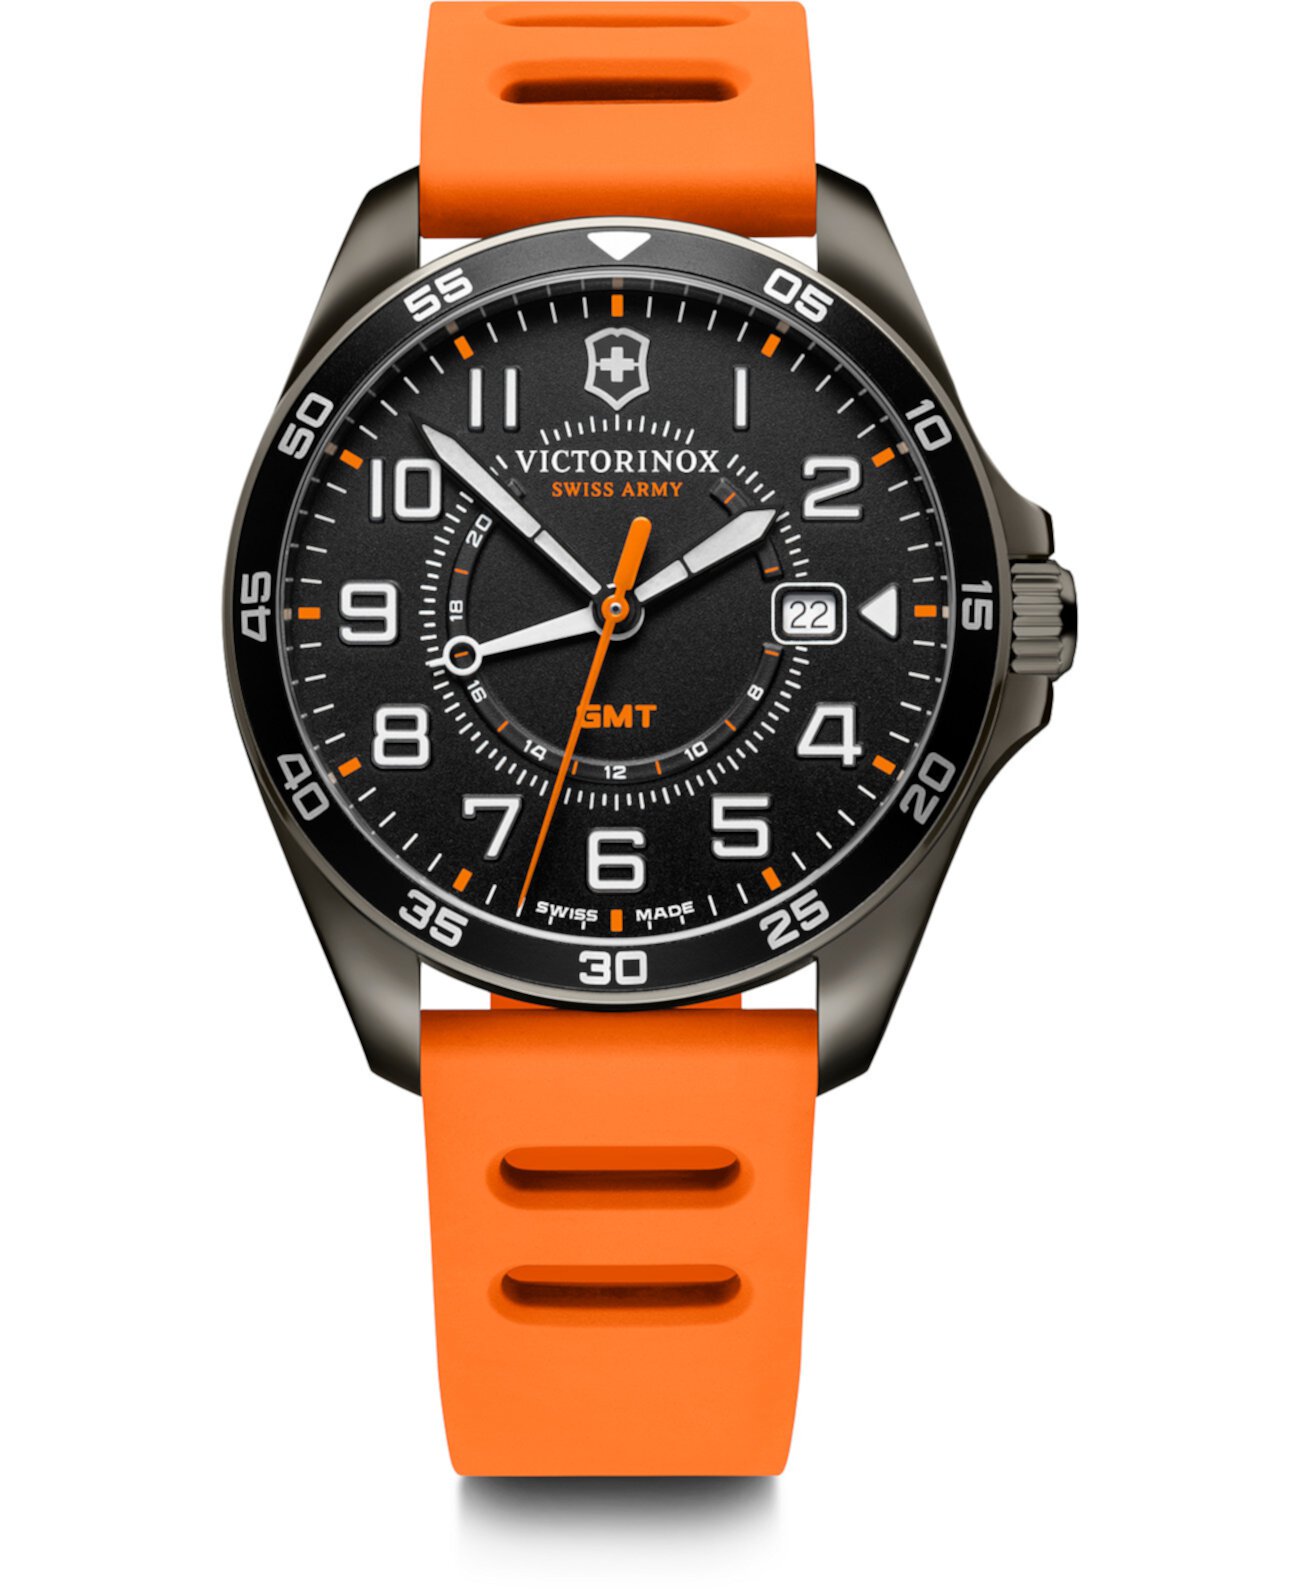 Мужские часы Fieldforce GMT с оранжевым каучуковым ремешком 42мм Victorinox Swiss Army